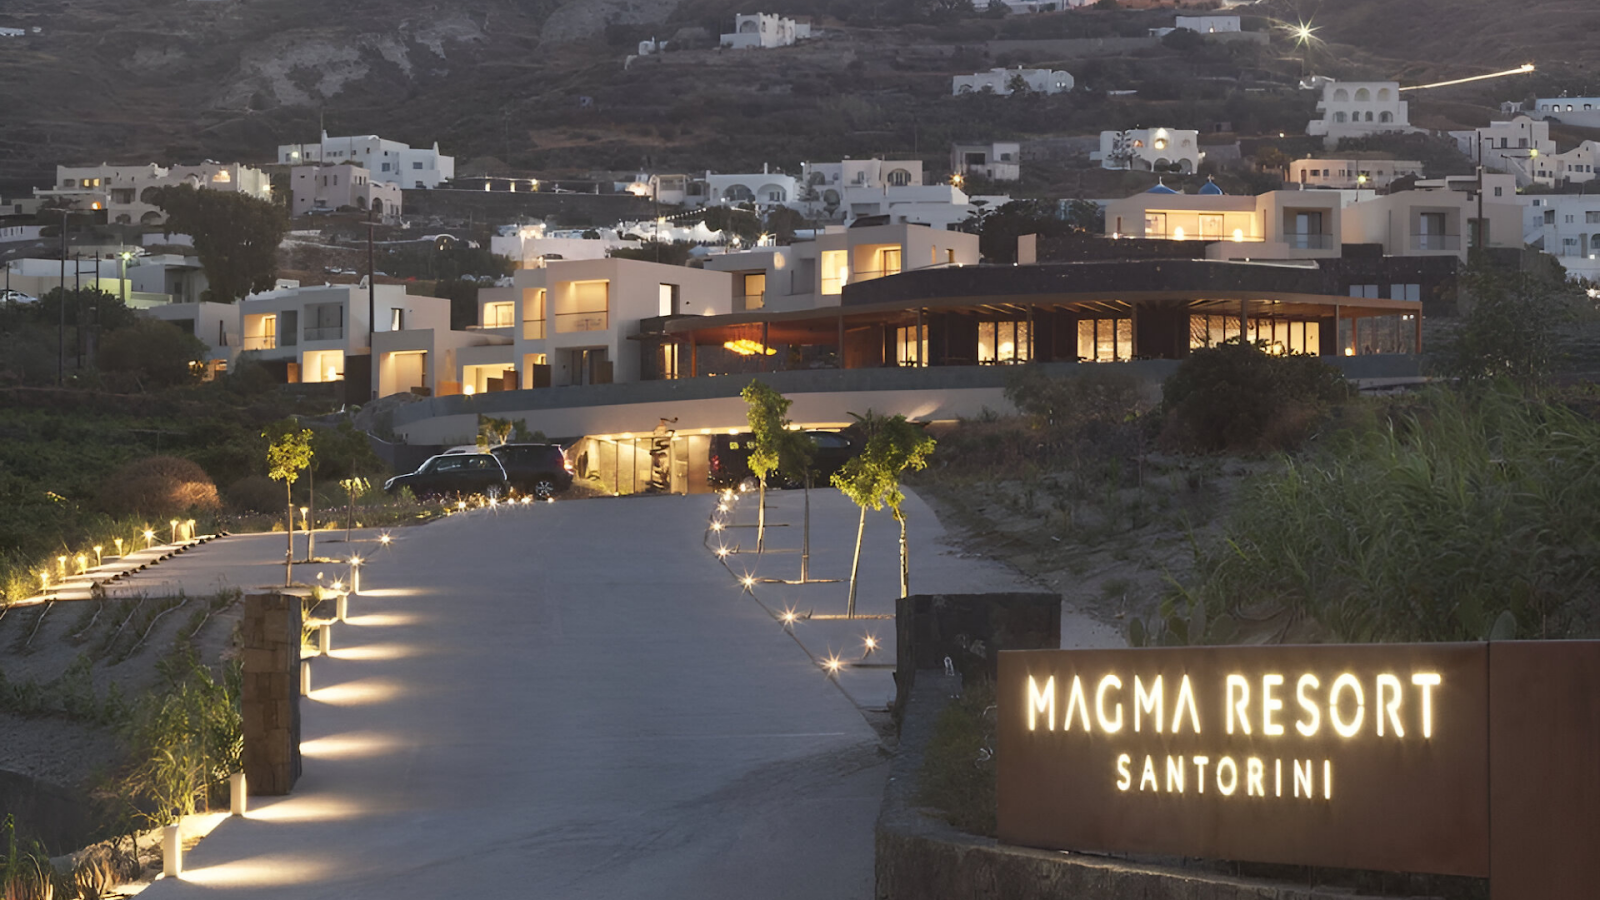 The driveway of a resort rental in Santorini.